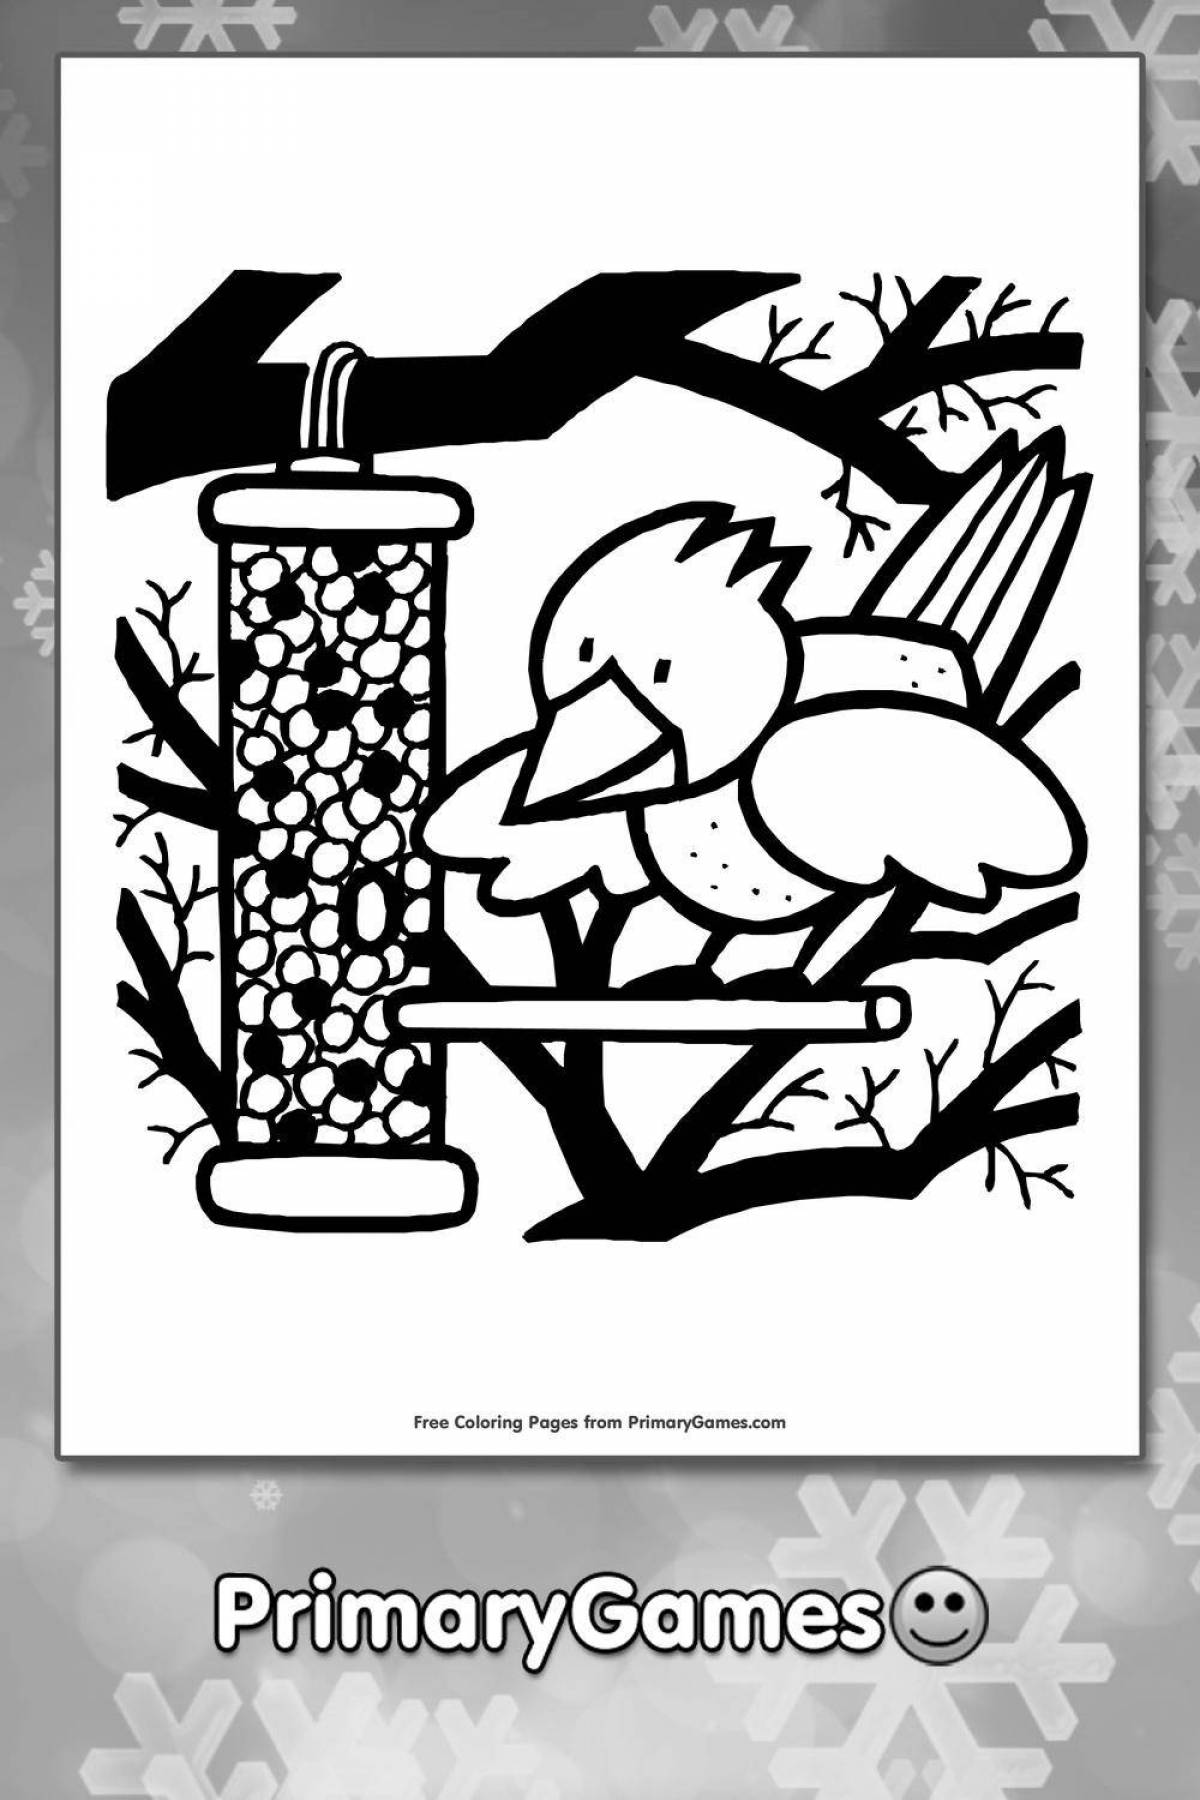 Feed the birds fun coloring book